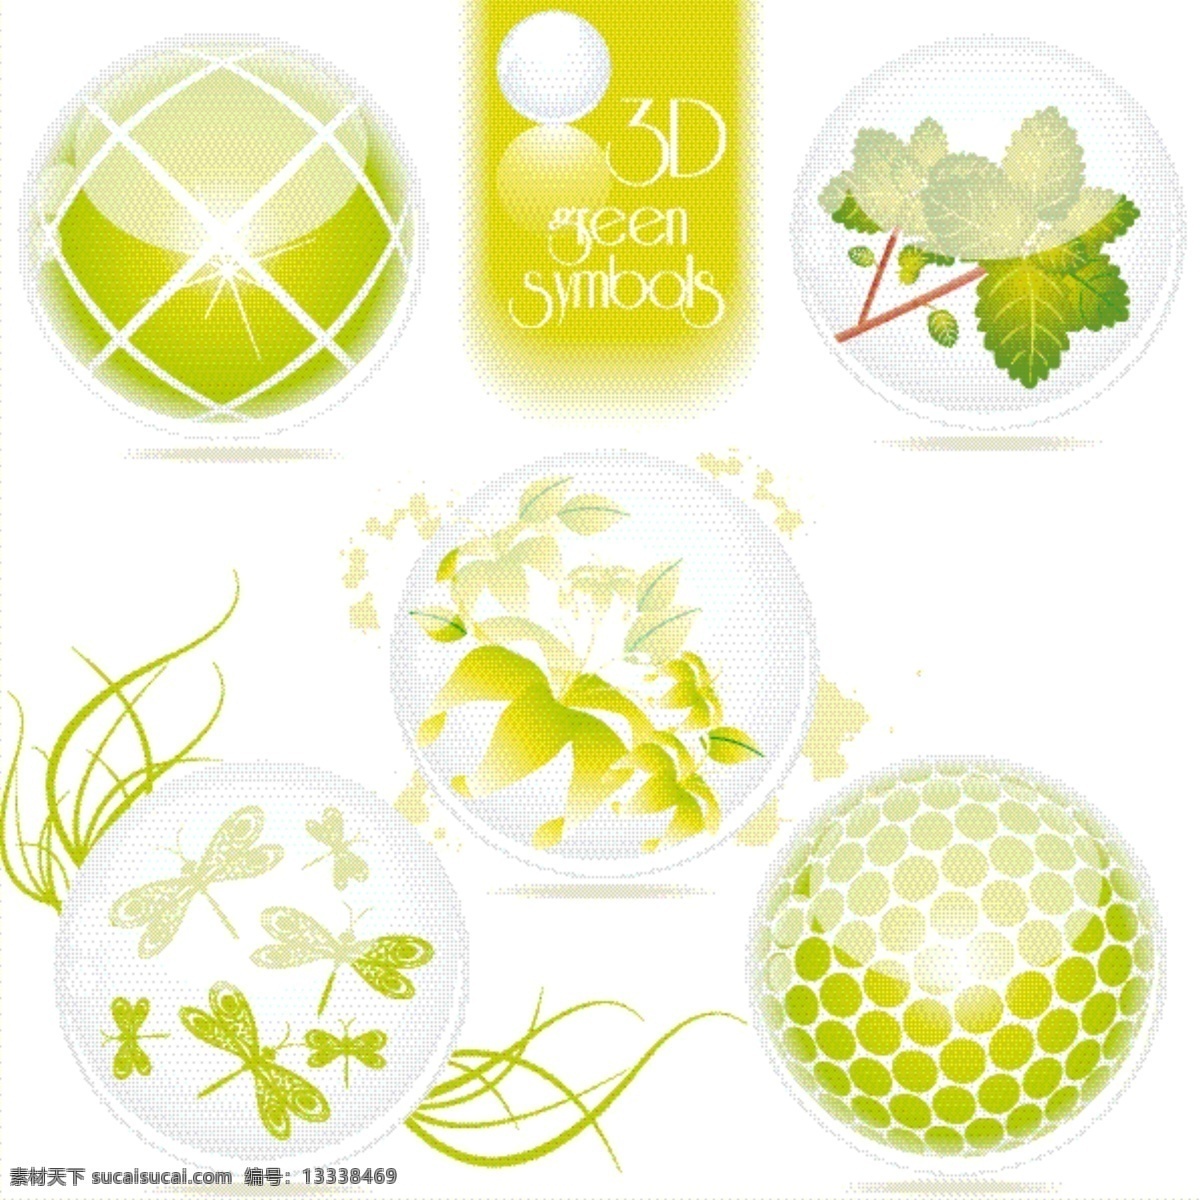 矢量 绿色 立体 图案 花 绿叶 球 球体 柔和 矢量素材 树叶 水晶球 叶子 矢量图 花纹花边